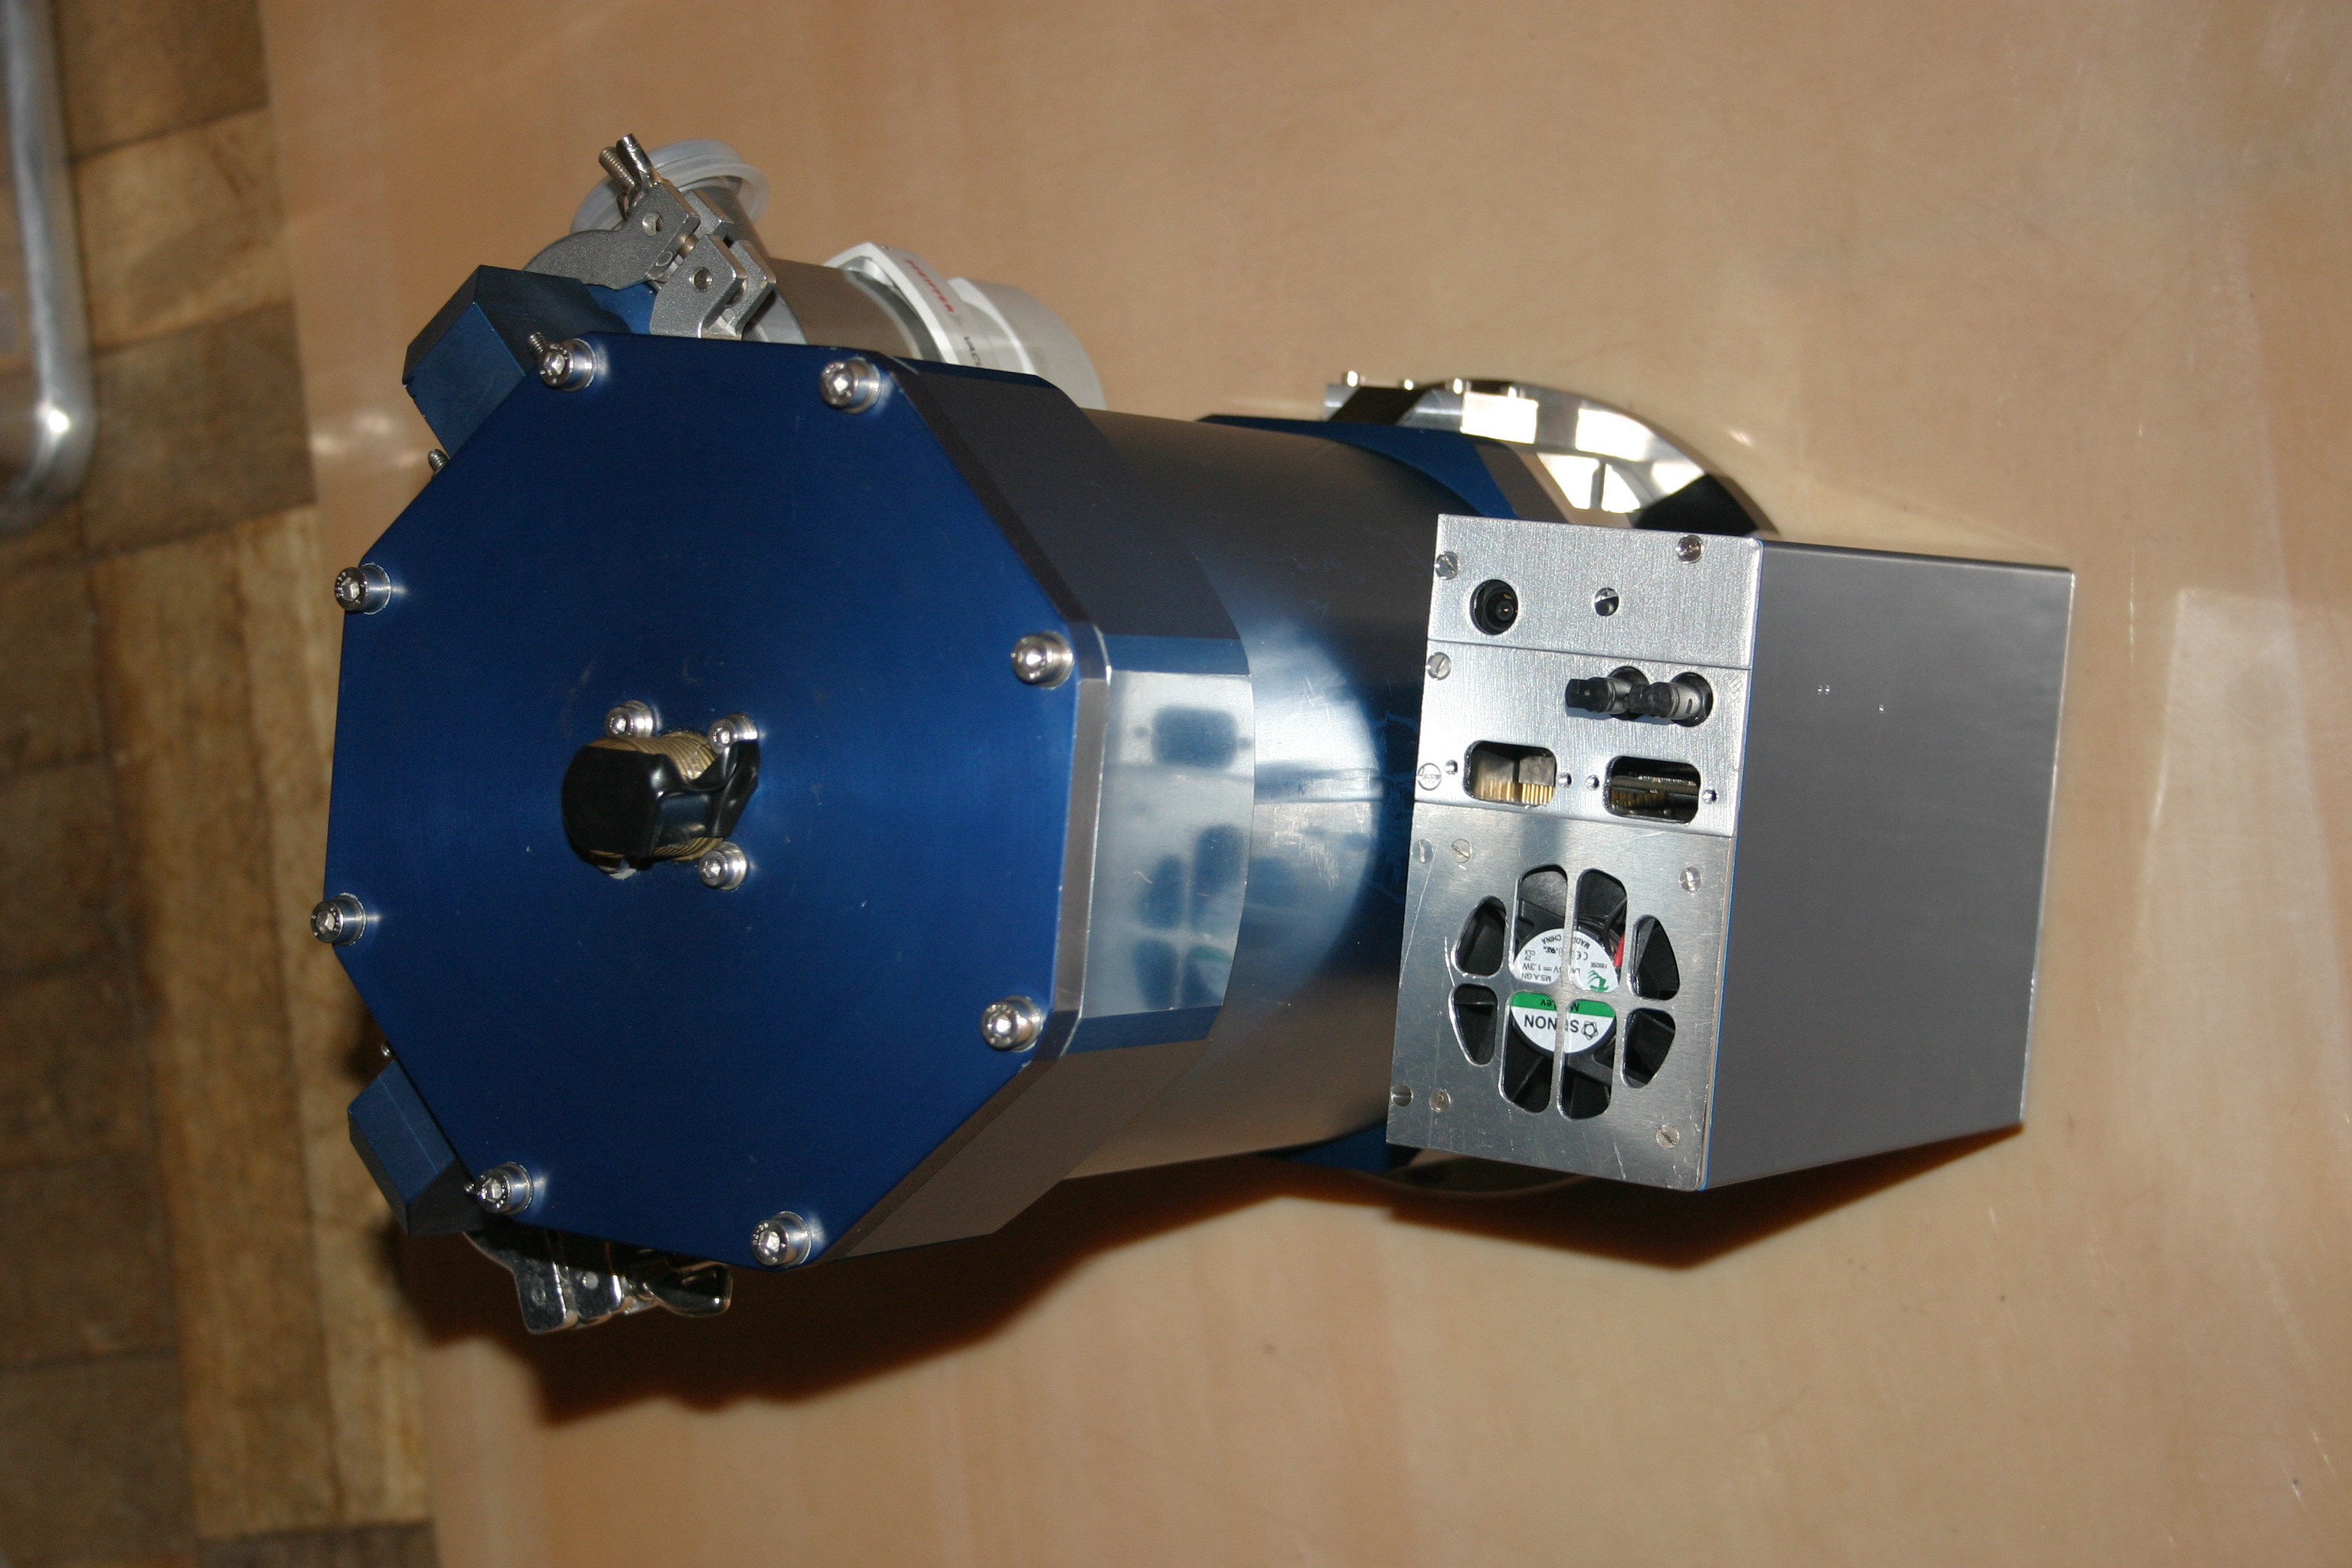 Hизкошумящая спектрофотометрическая ПЗС-камера с комплектом фильтров